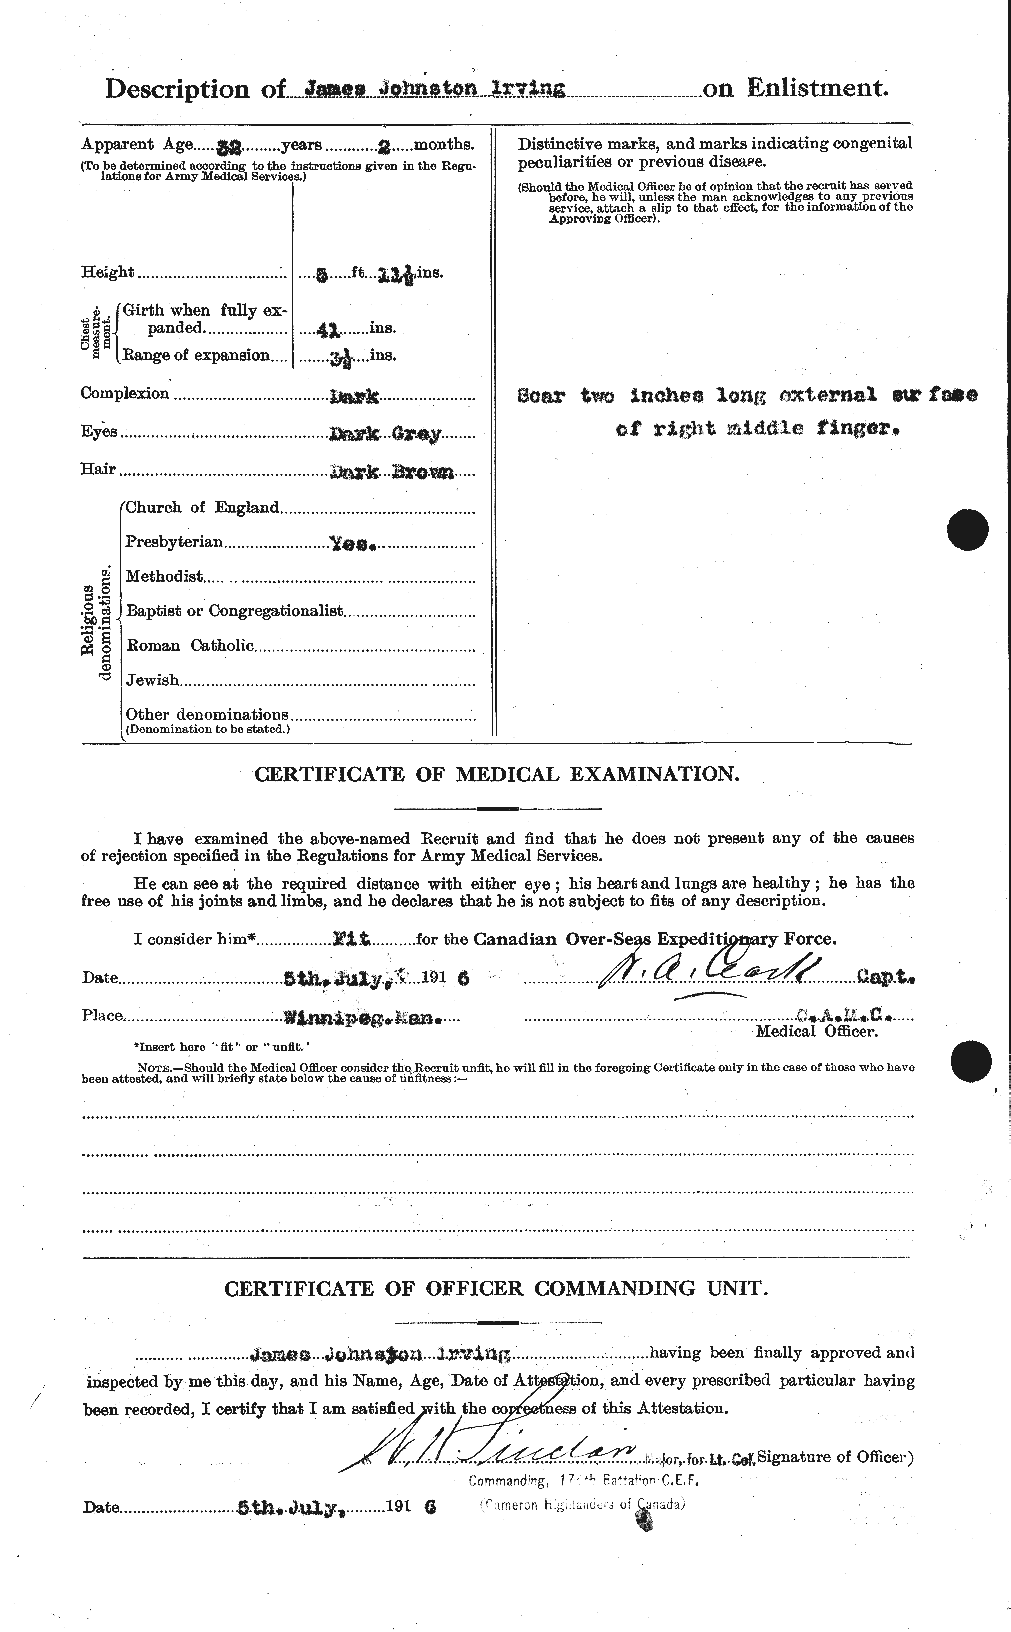 Dossiers du Personnel de la Première Guerre mondiale - CEC 412673b